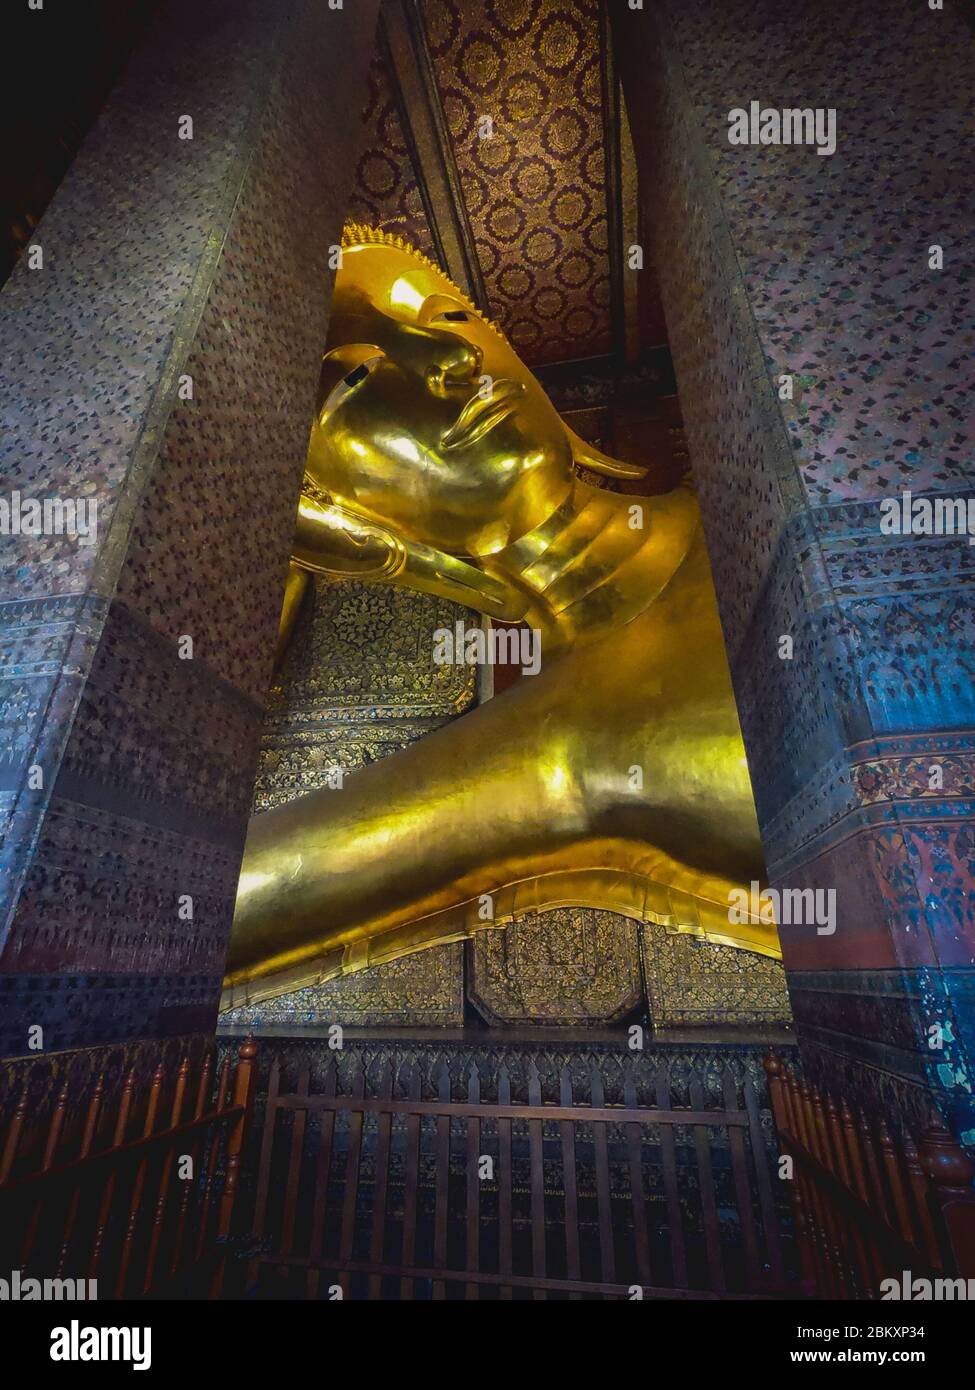 Gesicht der goldenen Statue des Reclining buddha im Wat Phra Chetuphon (Wat Pho) Buddhistischer Tempelkomplex Phra Nakhon District, Bangkok, Thailand 25/11/2019 Stockfoto